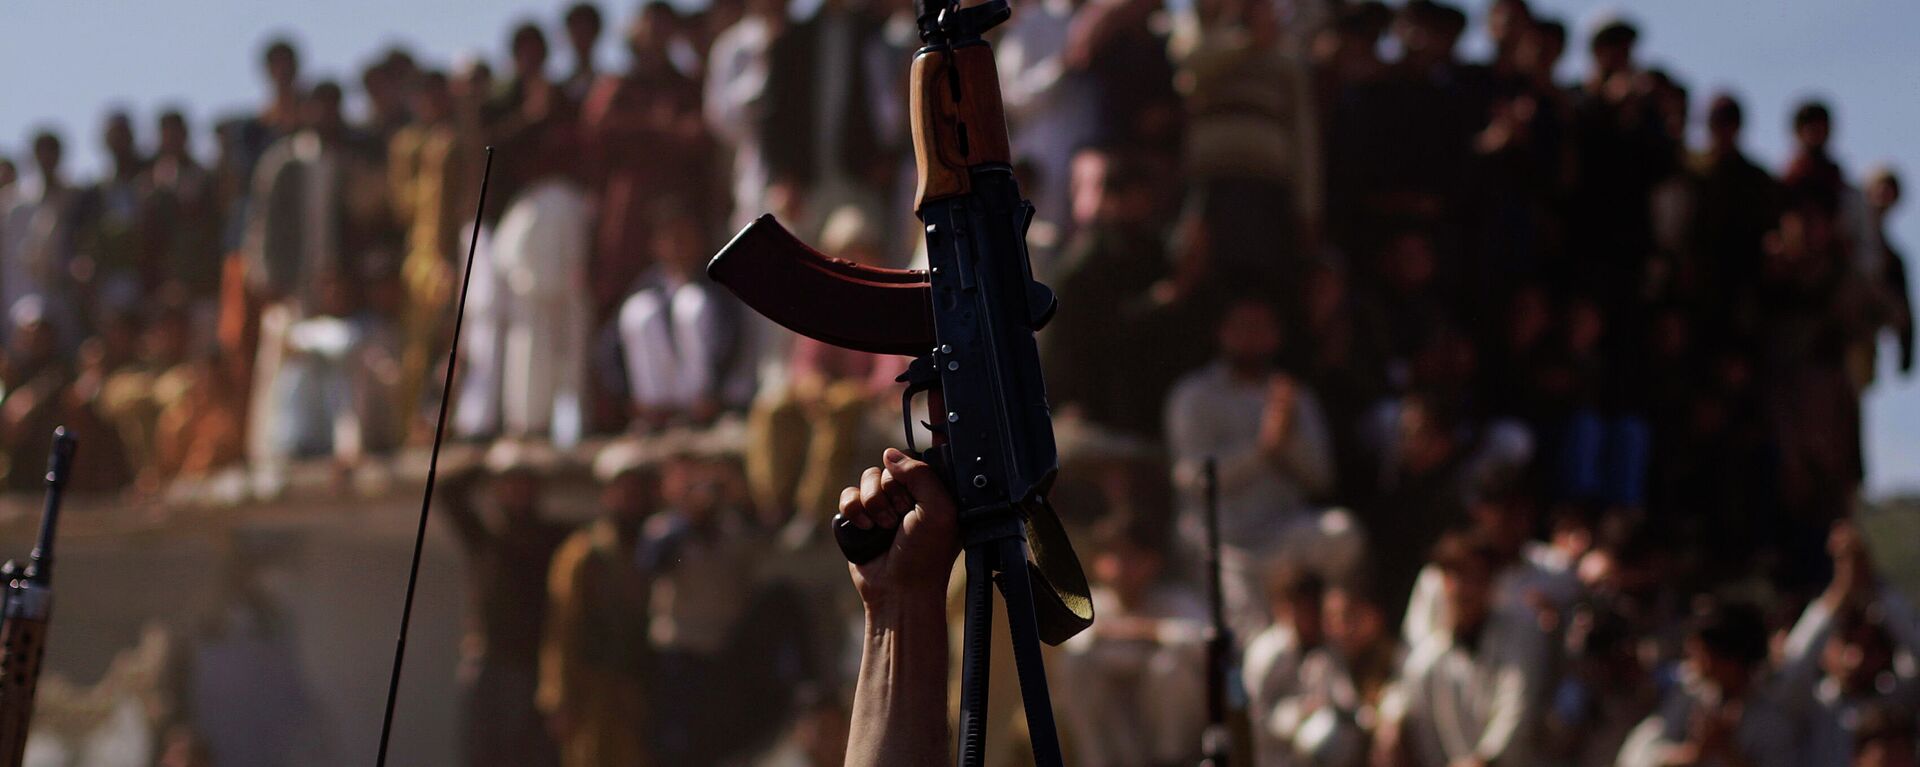 Вооруженные люди в Афганистане - Sputnik Узбекистан, 1920, 16.07.2021